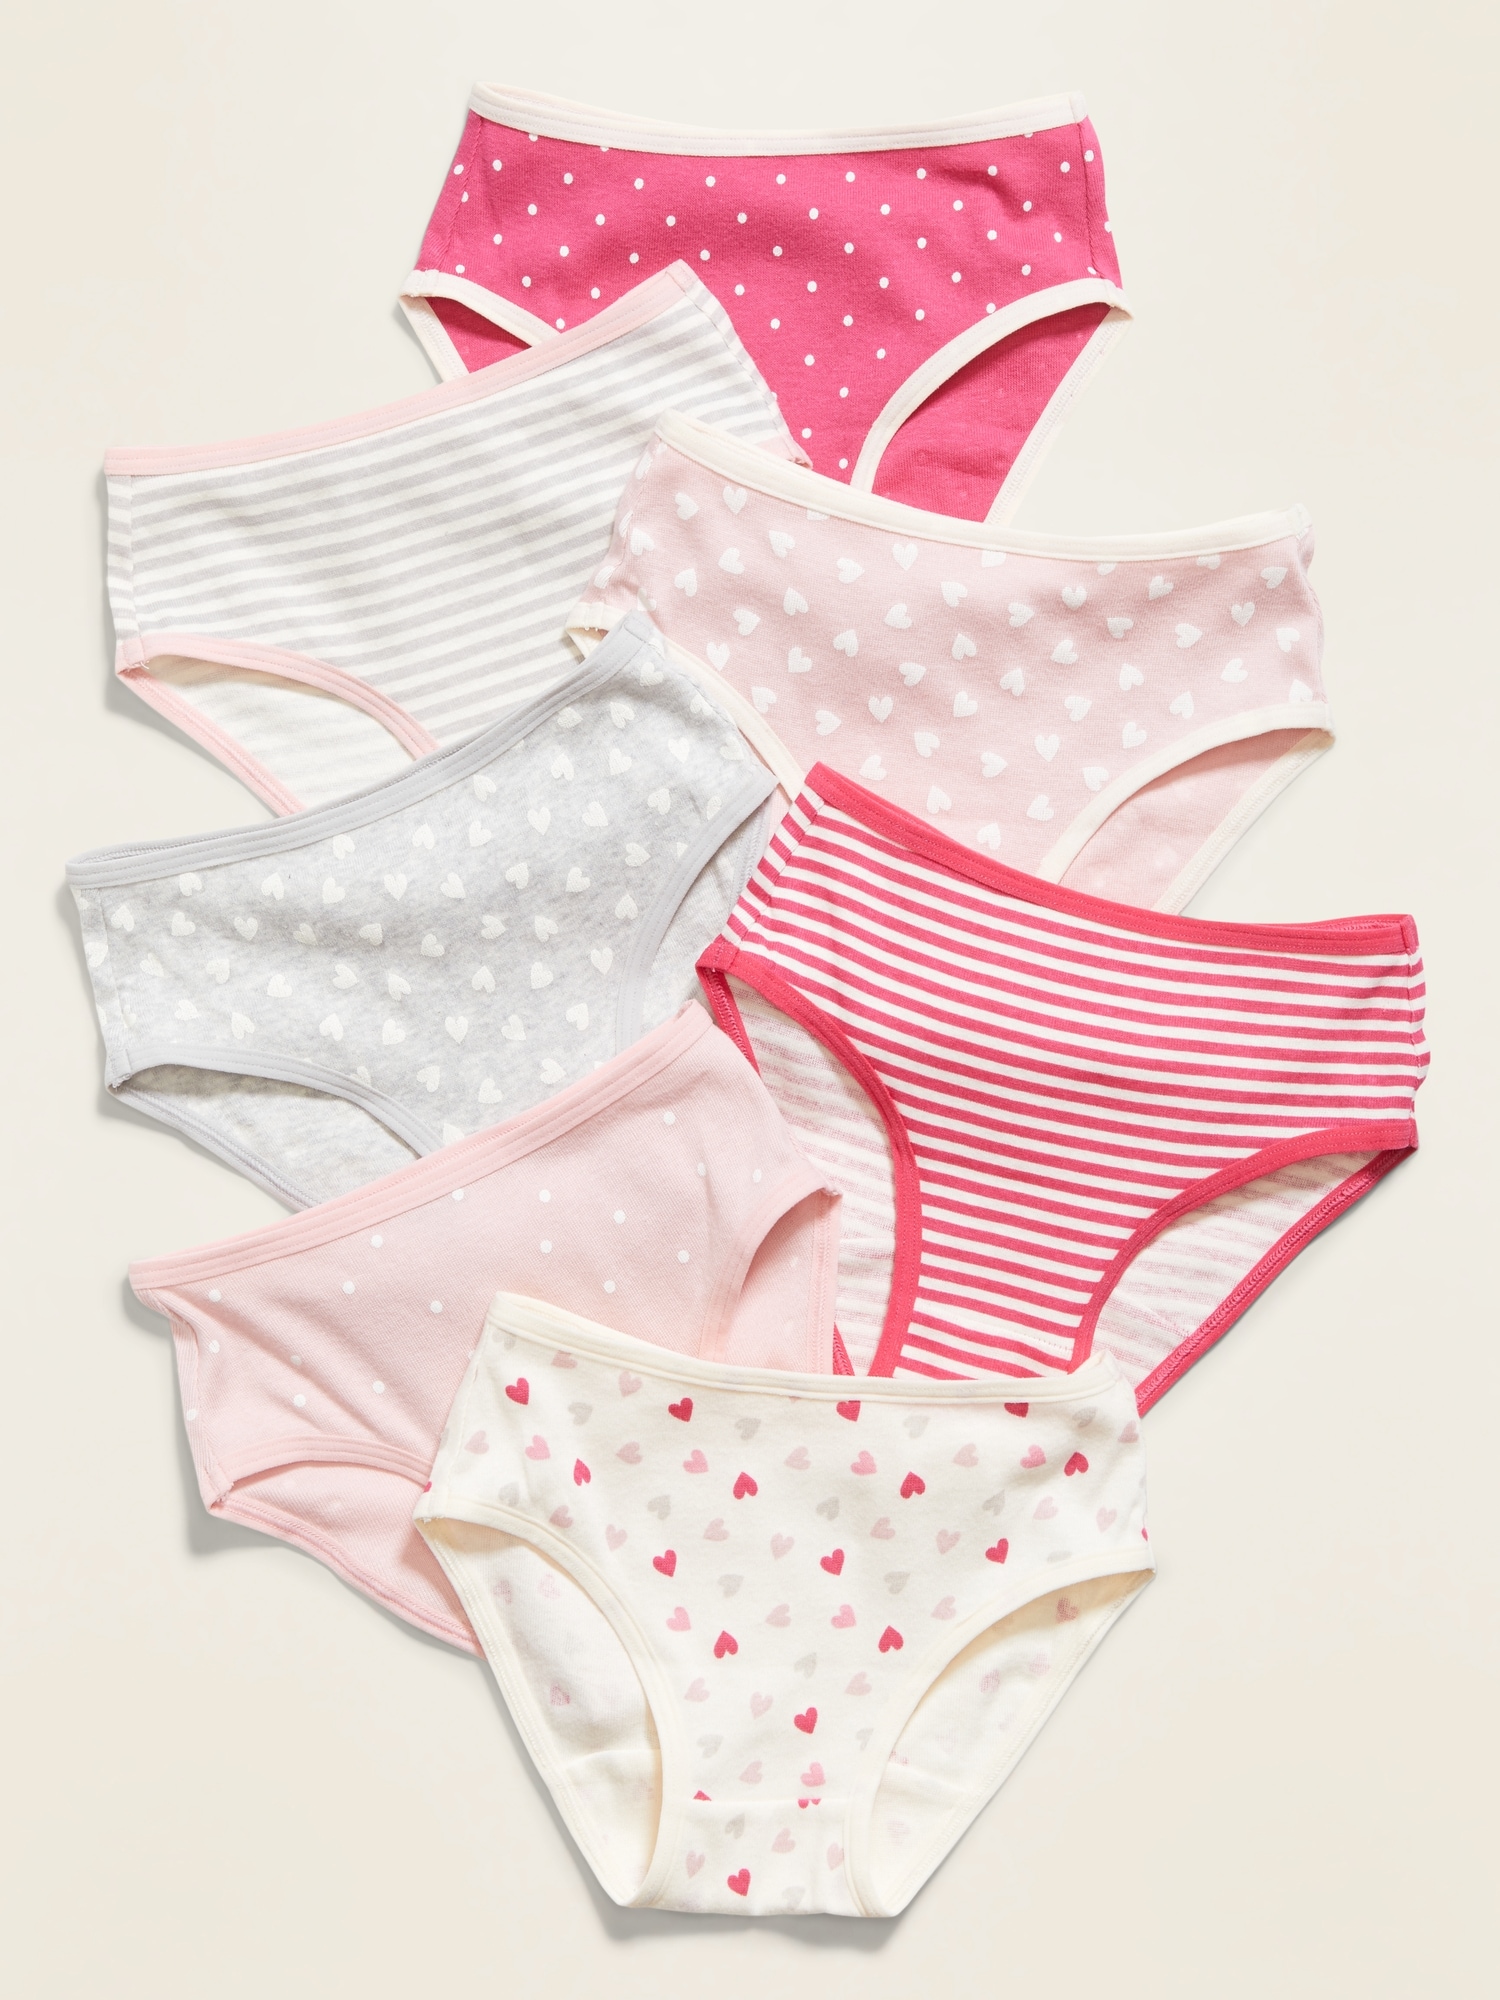 Vintage Underwear Toddler Girls Pink Puppies Panties 100% Cotton Unused  Underpants 4-5 Years -  Norway